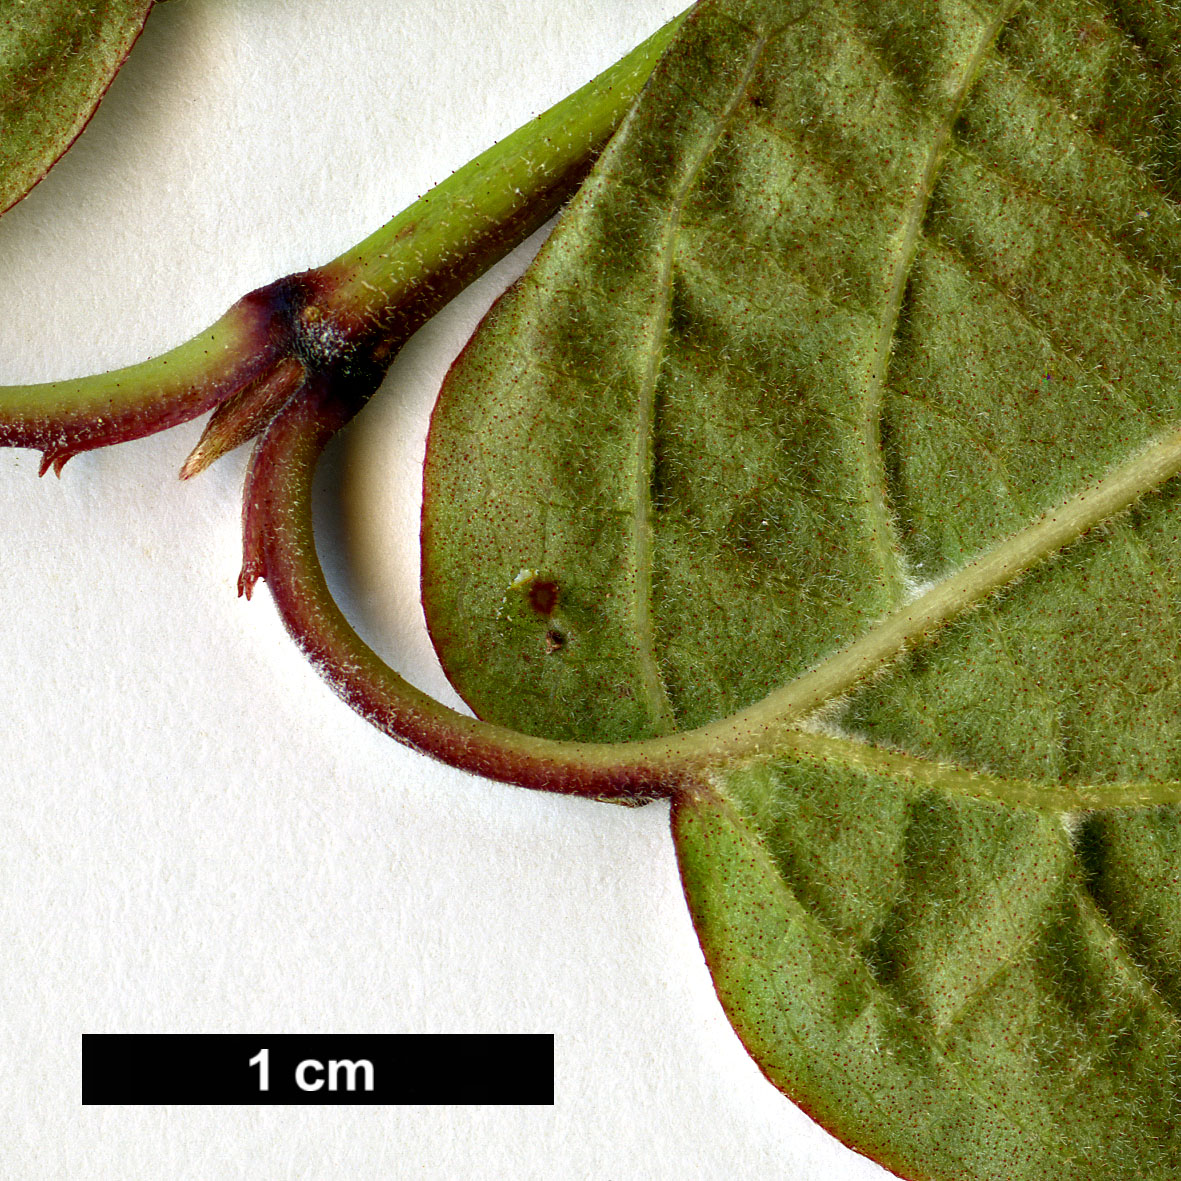 High resolution image: Family: Adoxaceae - Genus: Viburnum - Taxon: acerifolium